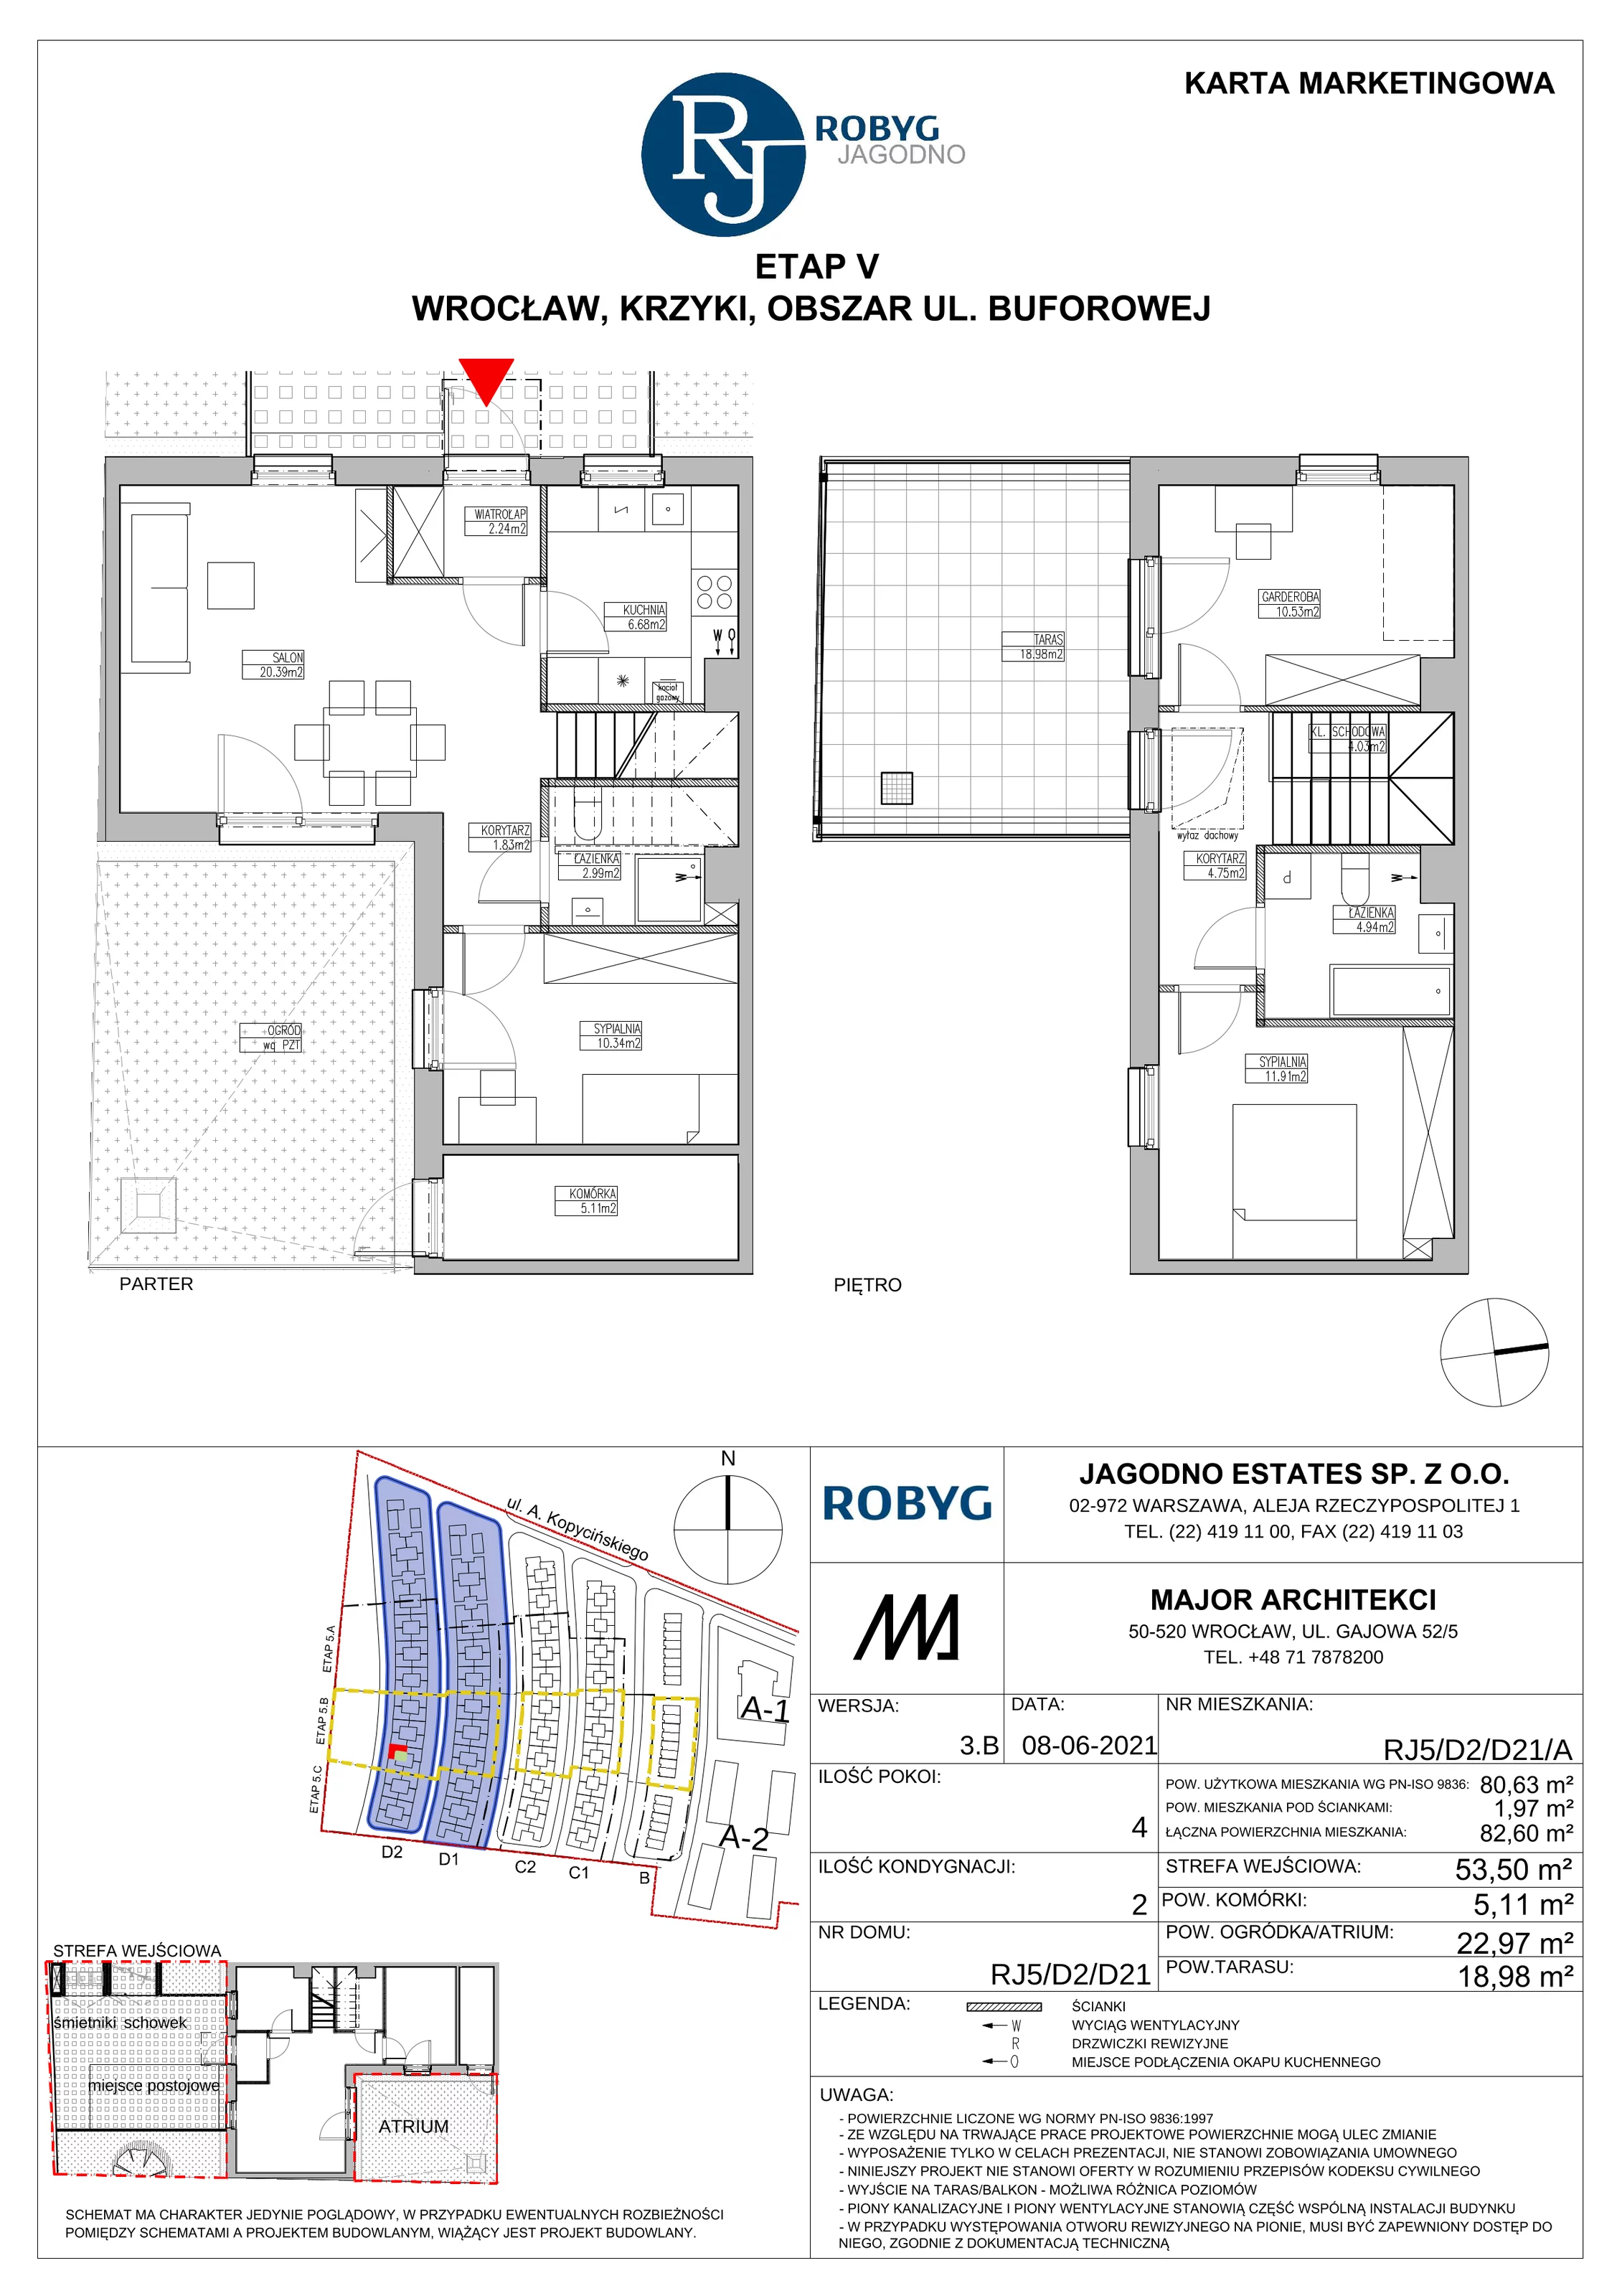 Dom 80,63 m², oferta nr RJ5/D2/D21/A, Robyg Jagodno, Wrocław, Jagodno, Krzyki, ul. Kopycińskiego